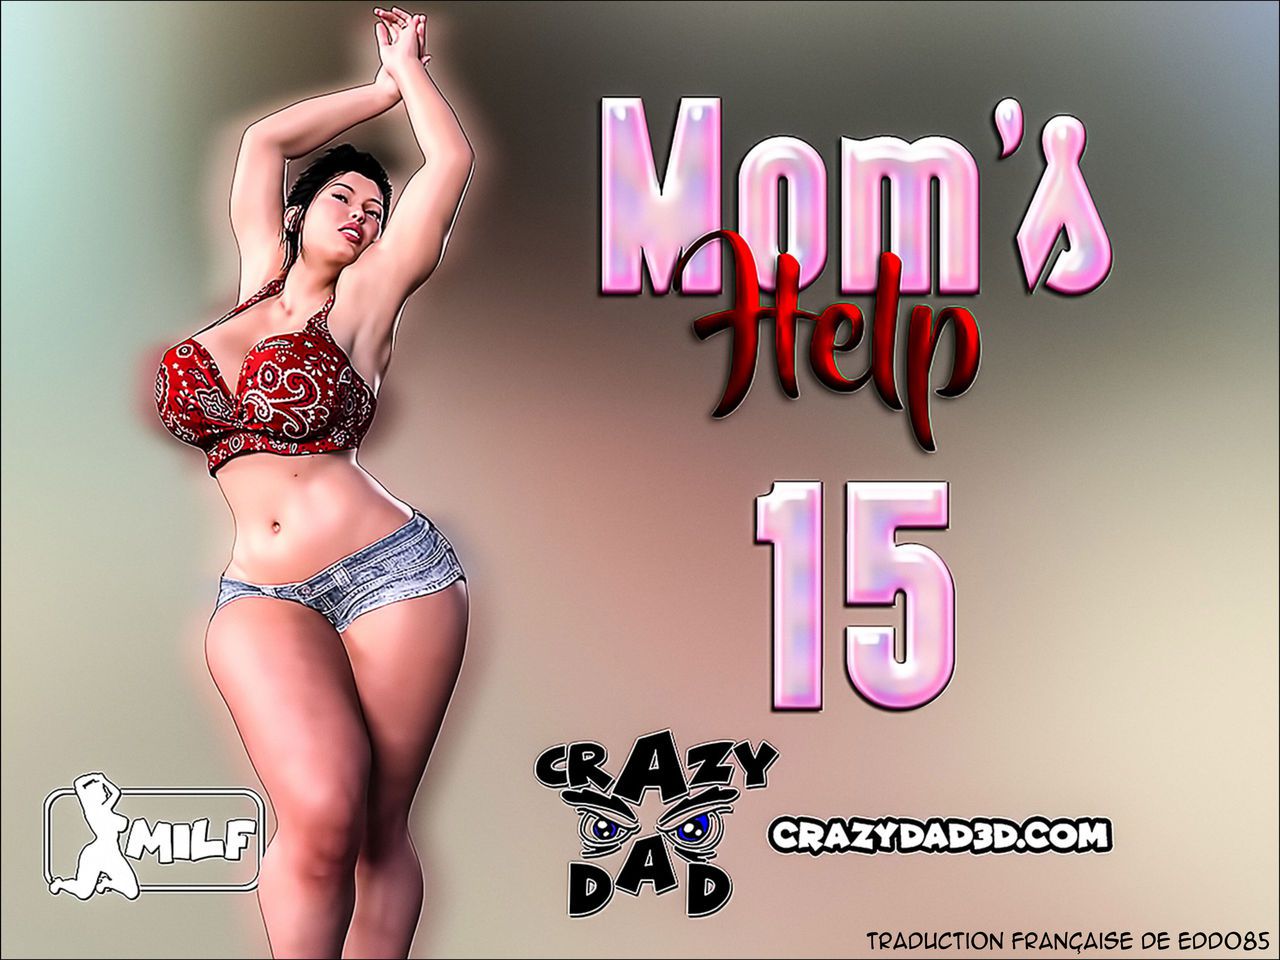 [CrazyDad] Mom's Help 15 [French][Edd085] 1